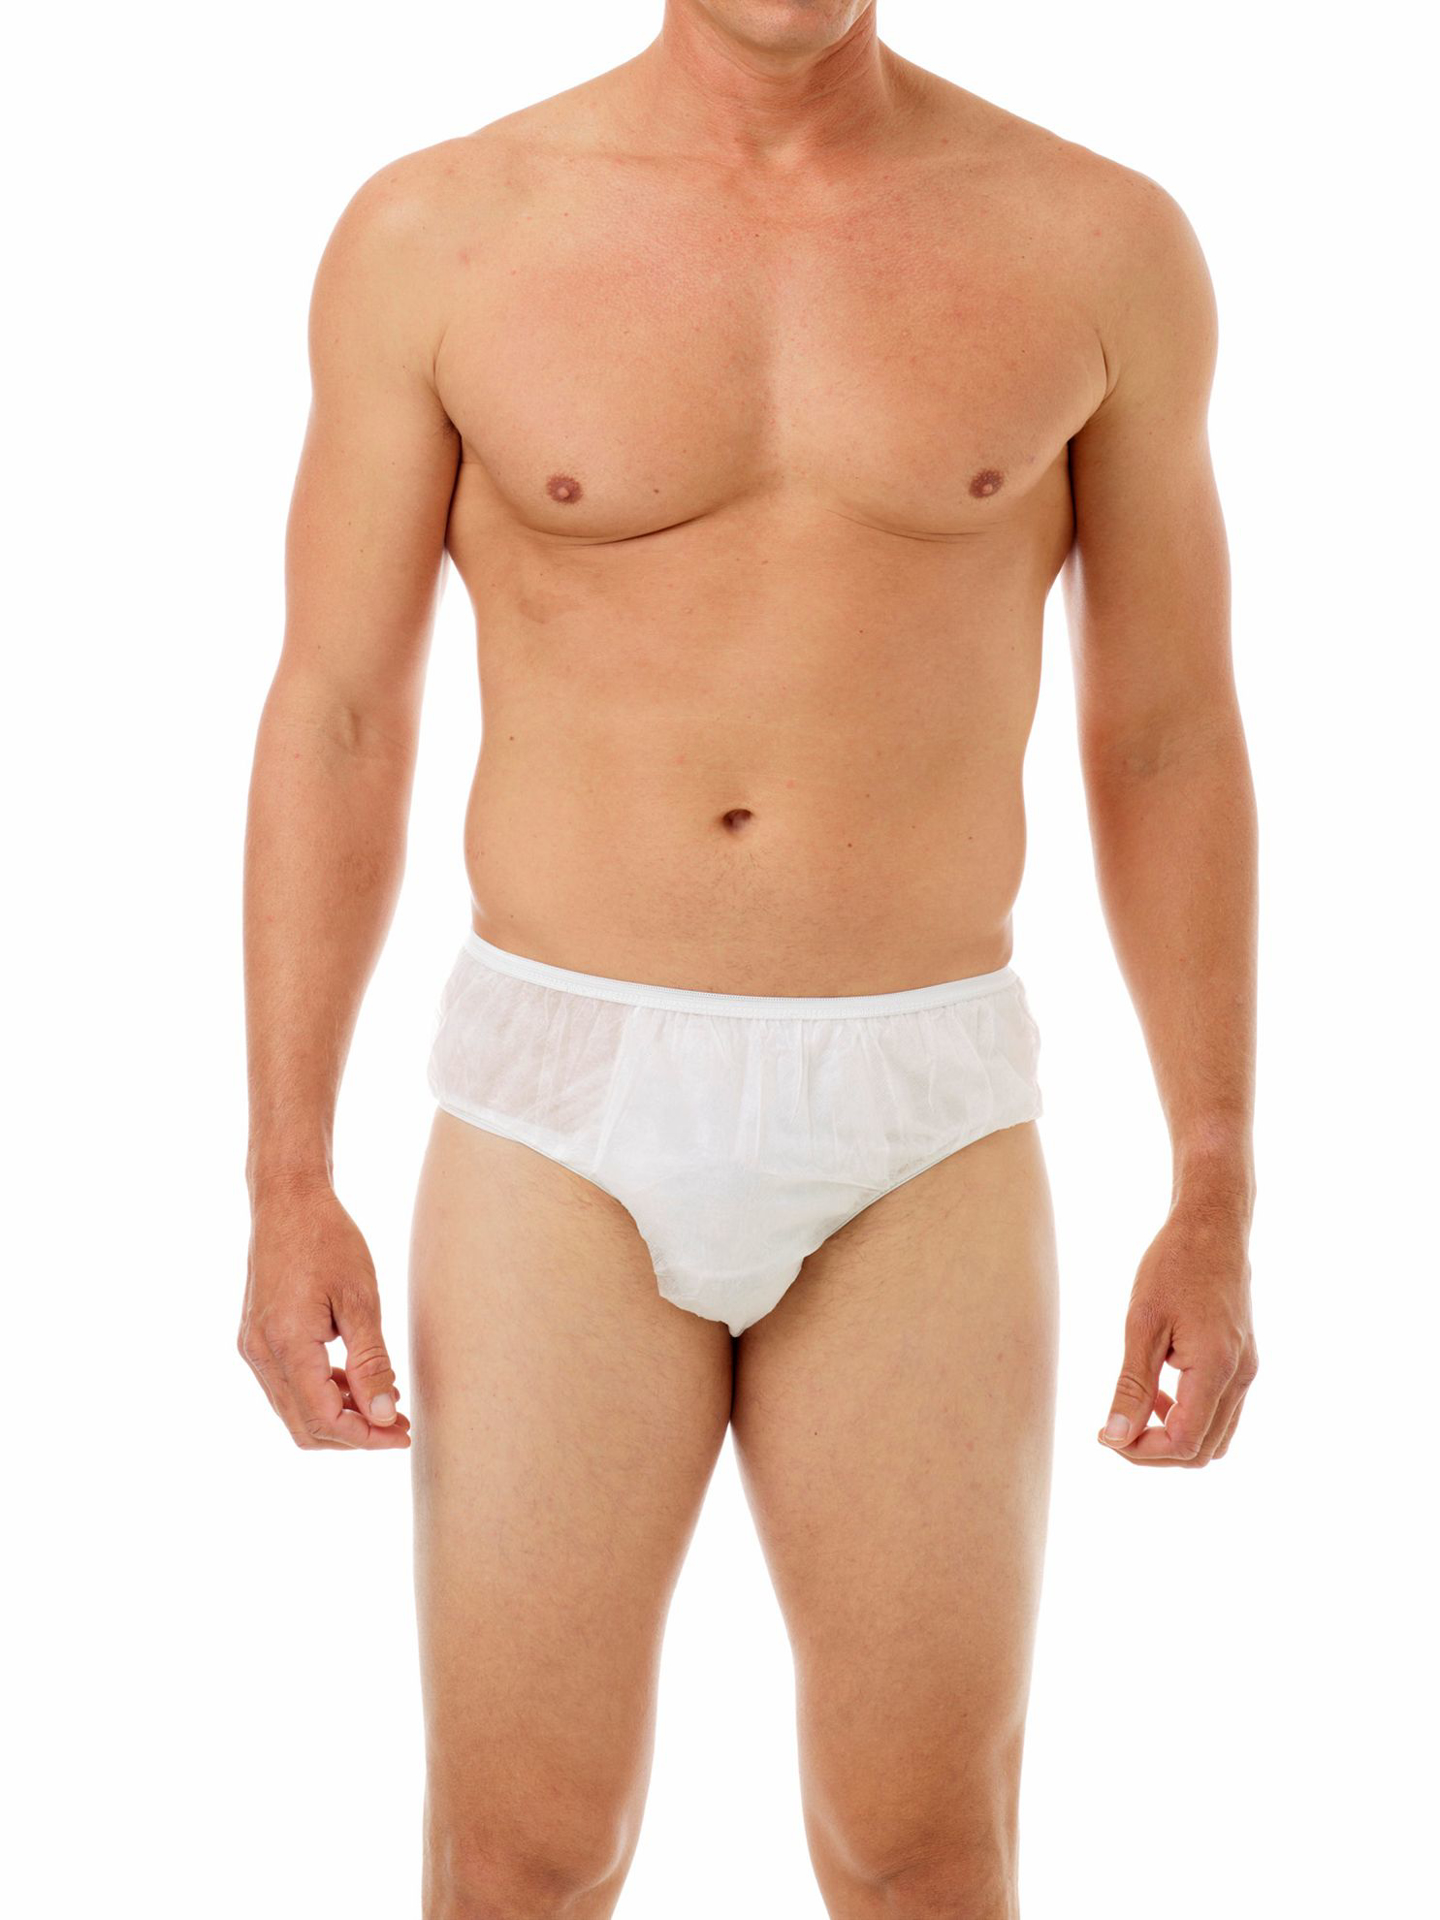 Men's Disposable Underwear Travel Underwear 100%Cotton Briefs